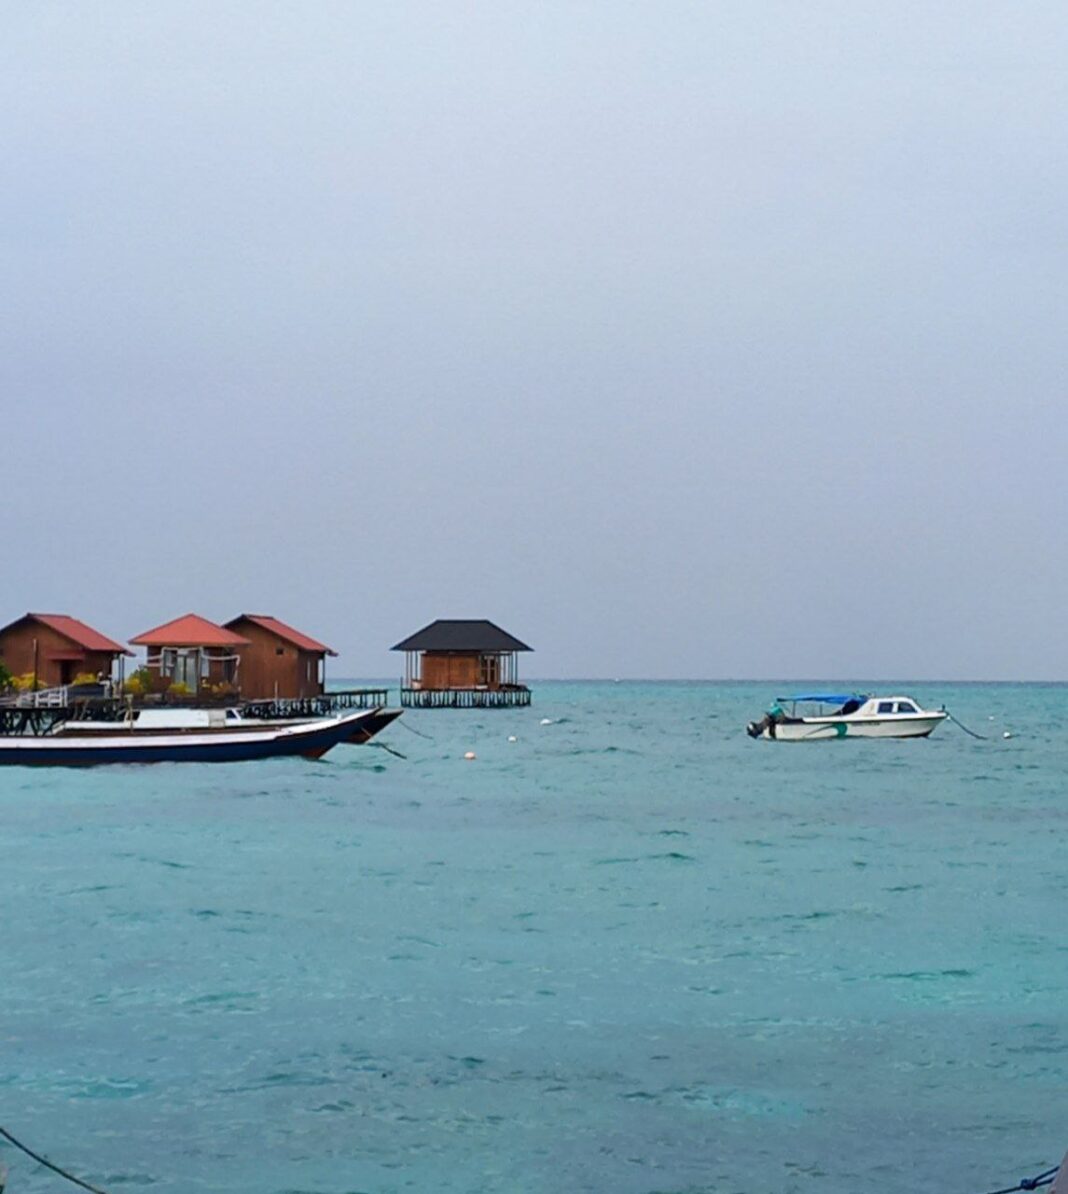 Saga Sebut Izin Resort di Atas Perairan Laut Harus Daftar Online